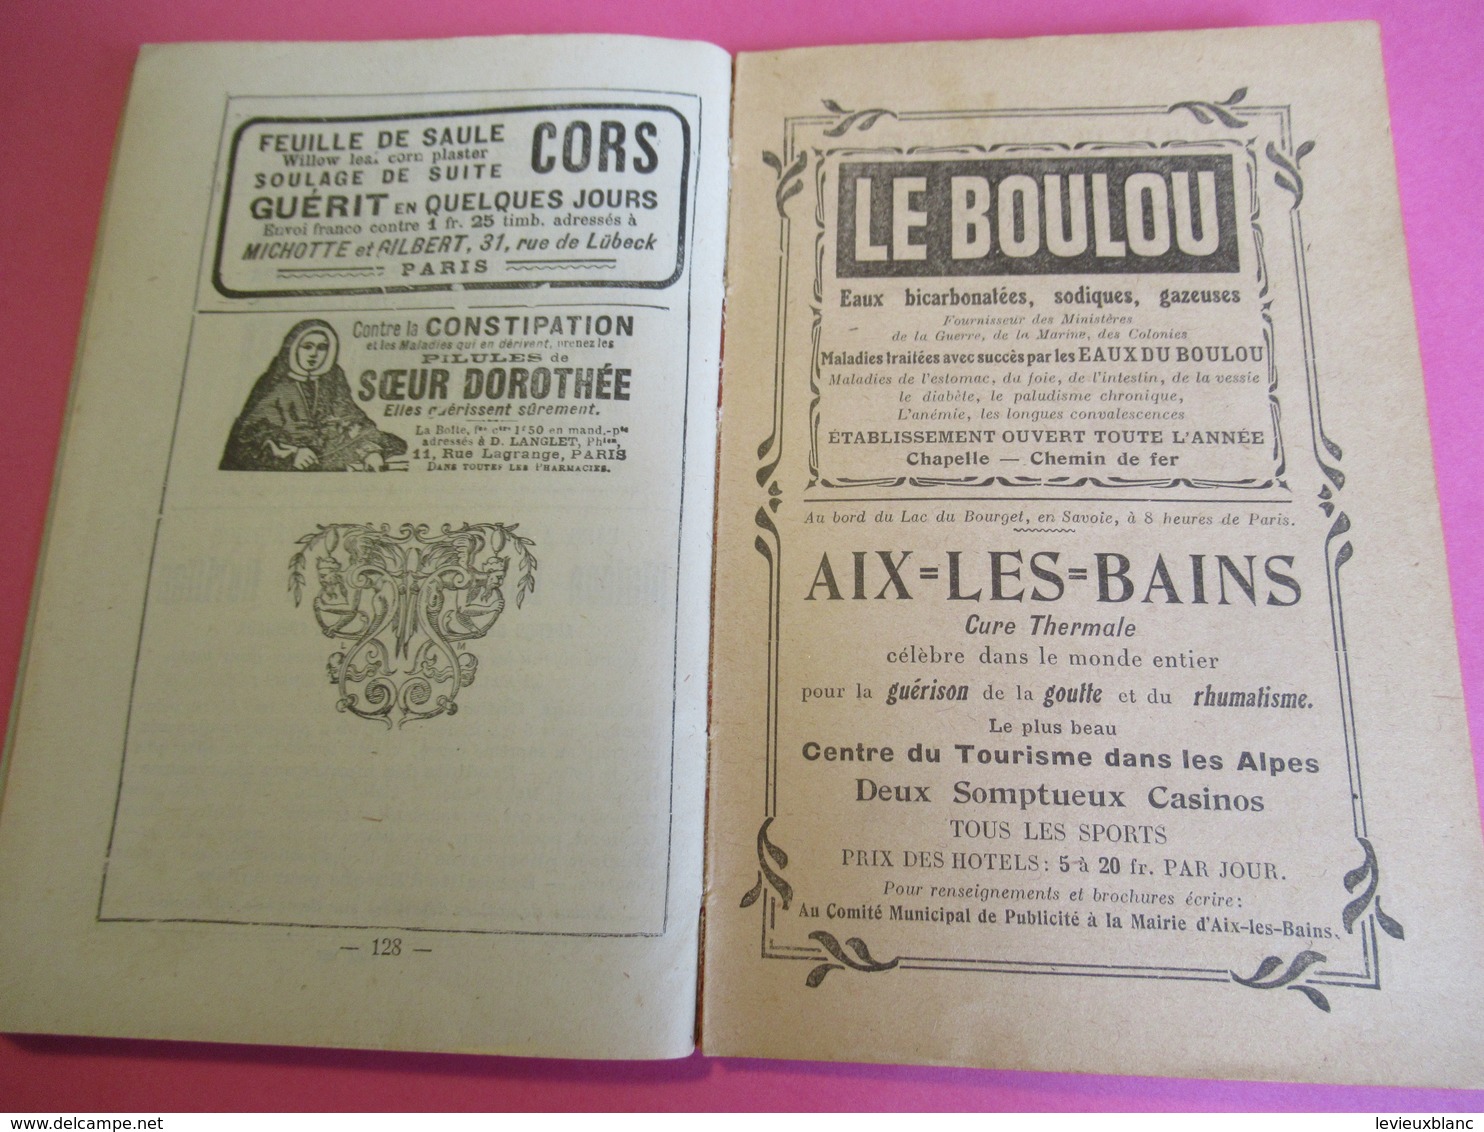 GuidesDiamant/ Le-MONT-DORE La- BOURBOULE SAINT-NECTAIRE/Hachette et Cie/1918        PGC269